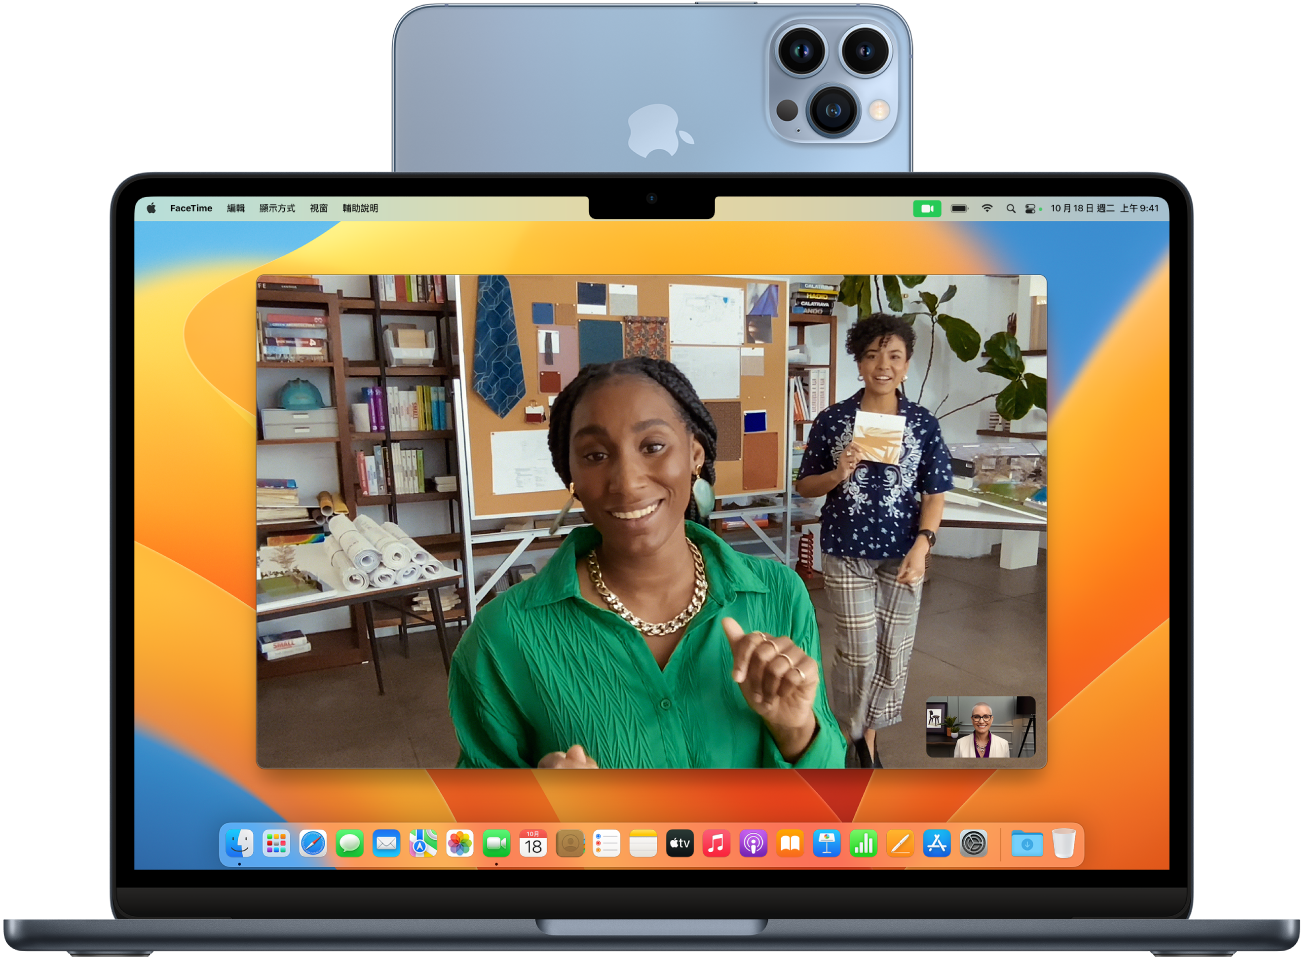 將 iPhone 作為網路攝影機使用並安裝在螢幕頂端的 Mac。可在 Mac 上看到來自 iPhone 相機的影像。